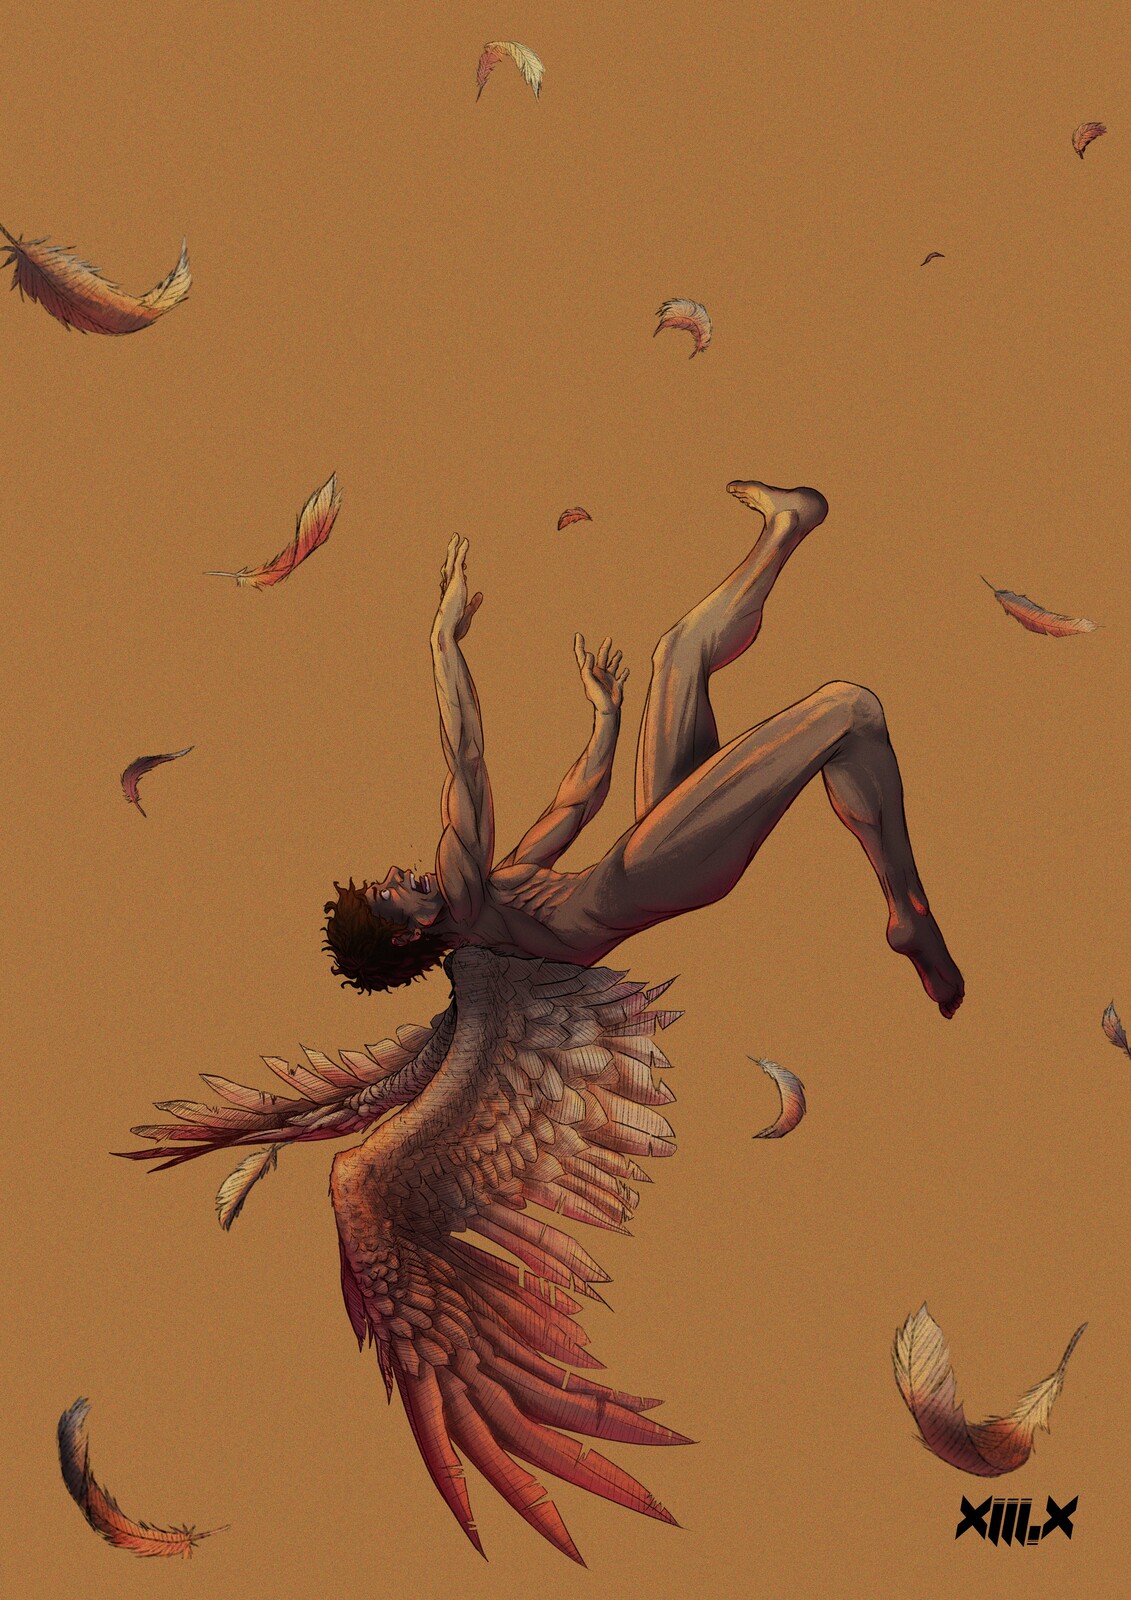 Meekaeel Jordan - The Fall of Icarus